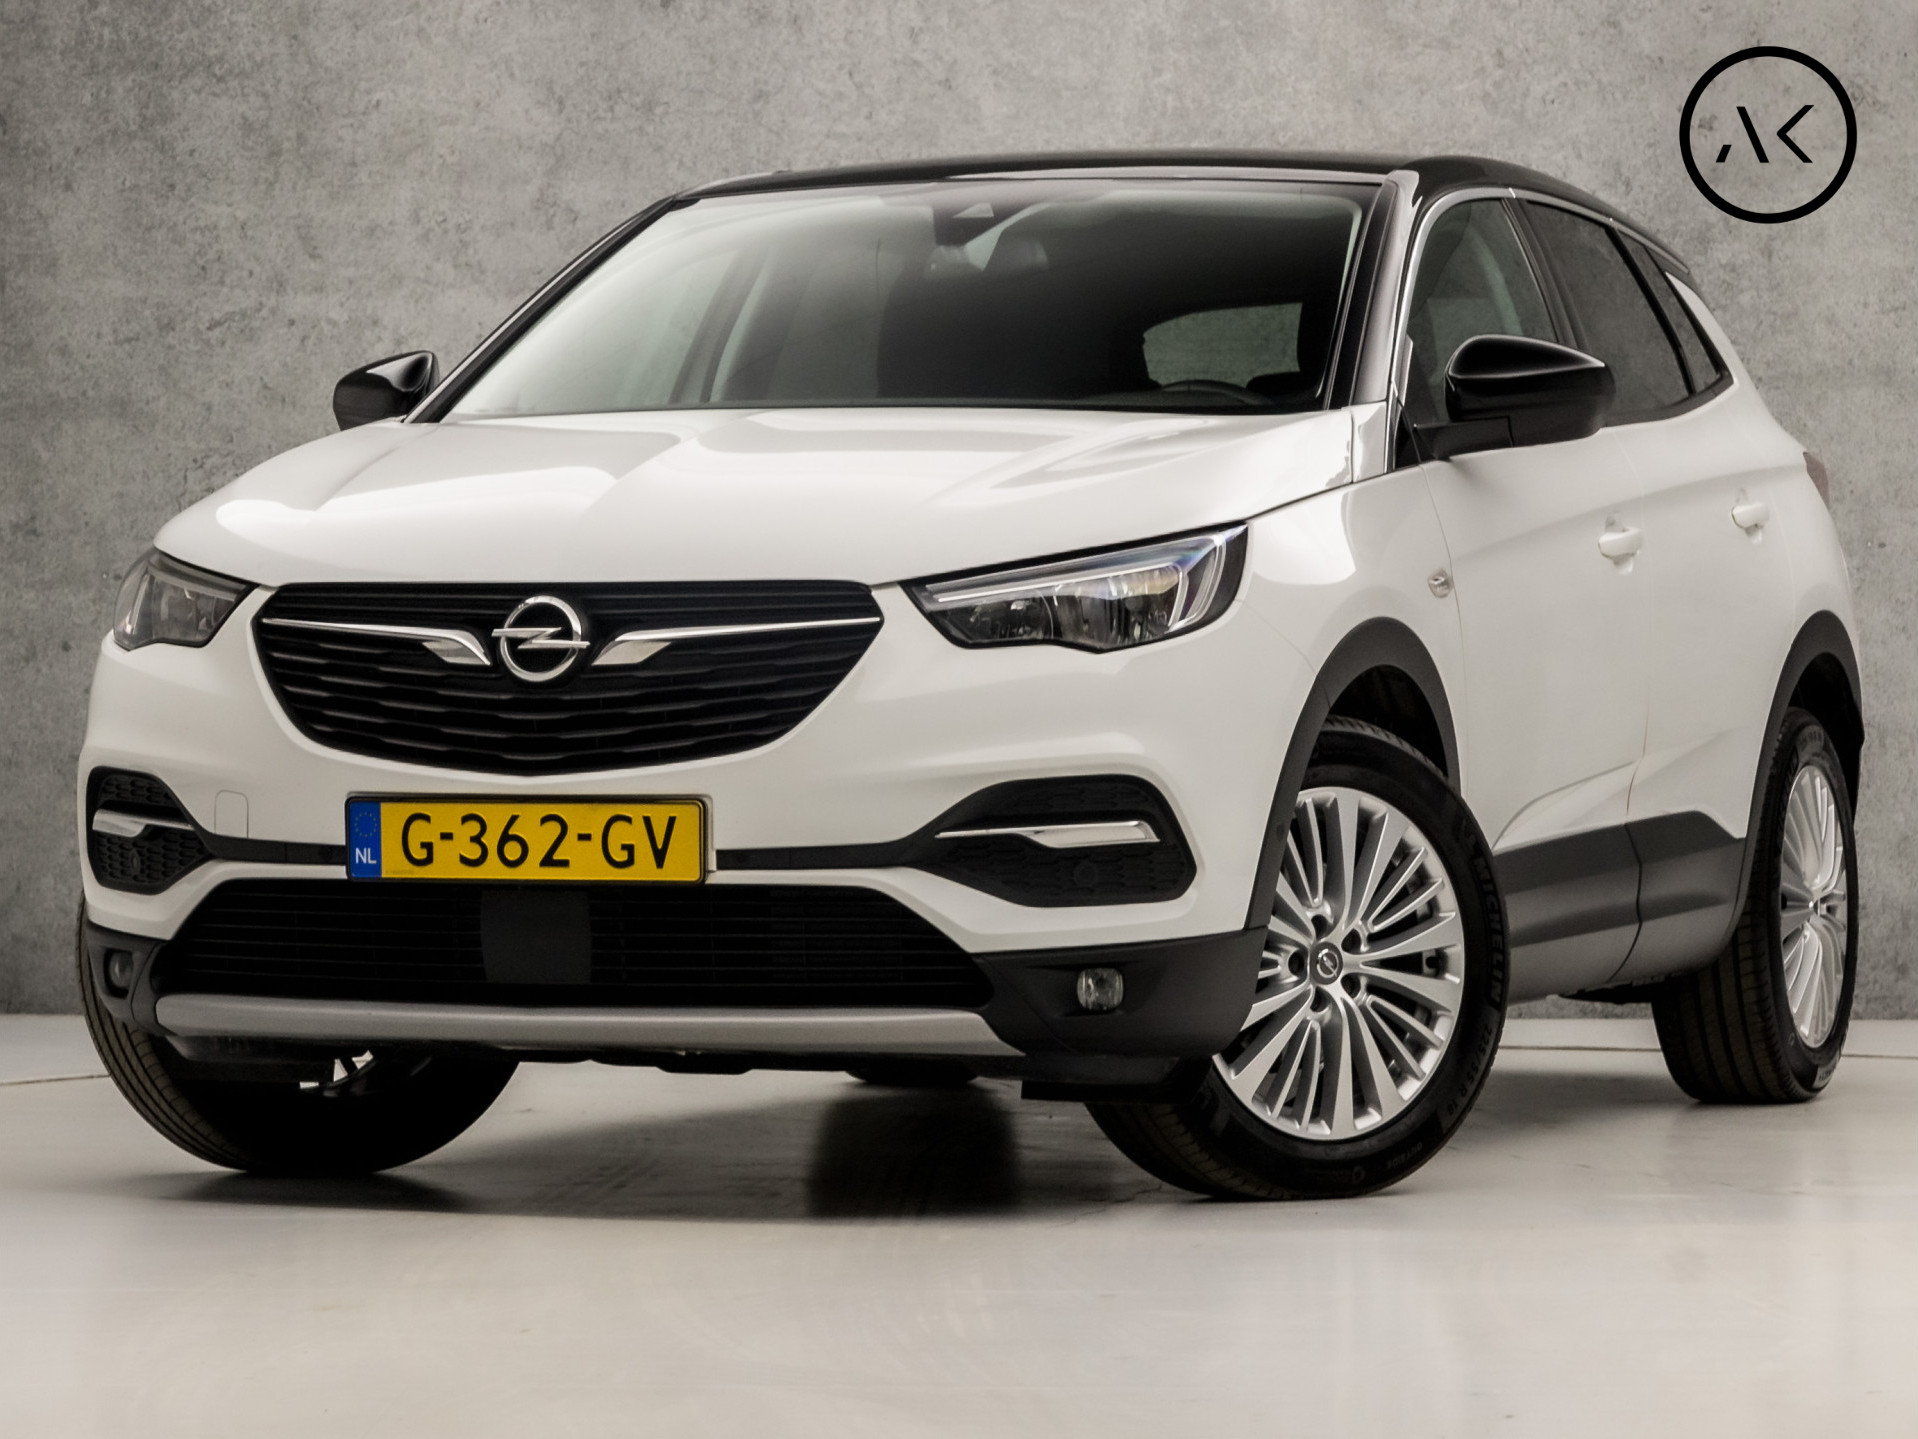 Tweedehands Opel occasion kopen